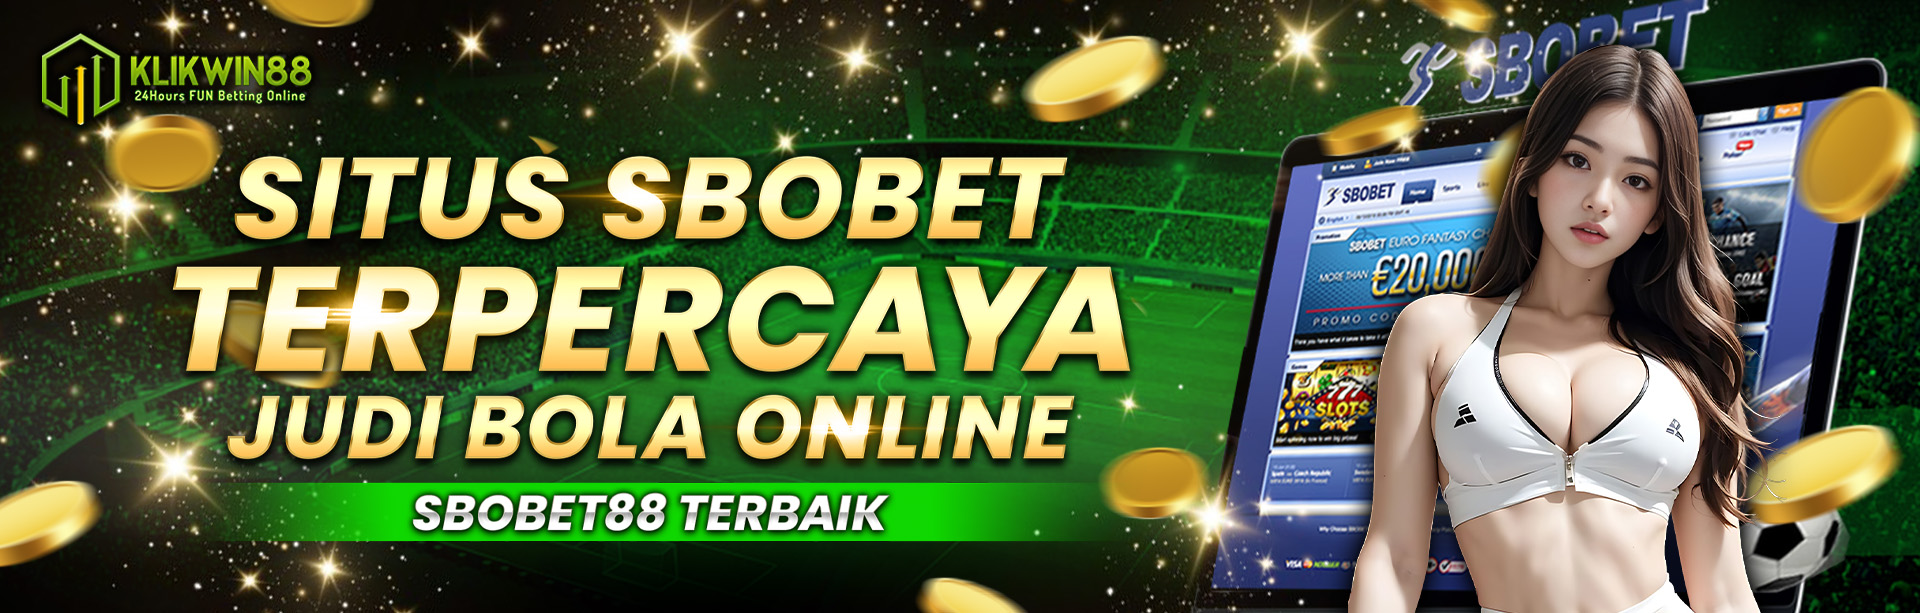 SBOBET > Situs Judi Bola Sbobet Online & Sbobet88 Login Mix Parlay Terbaru